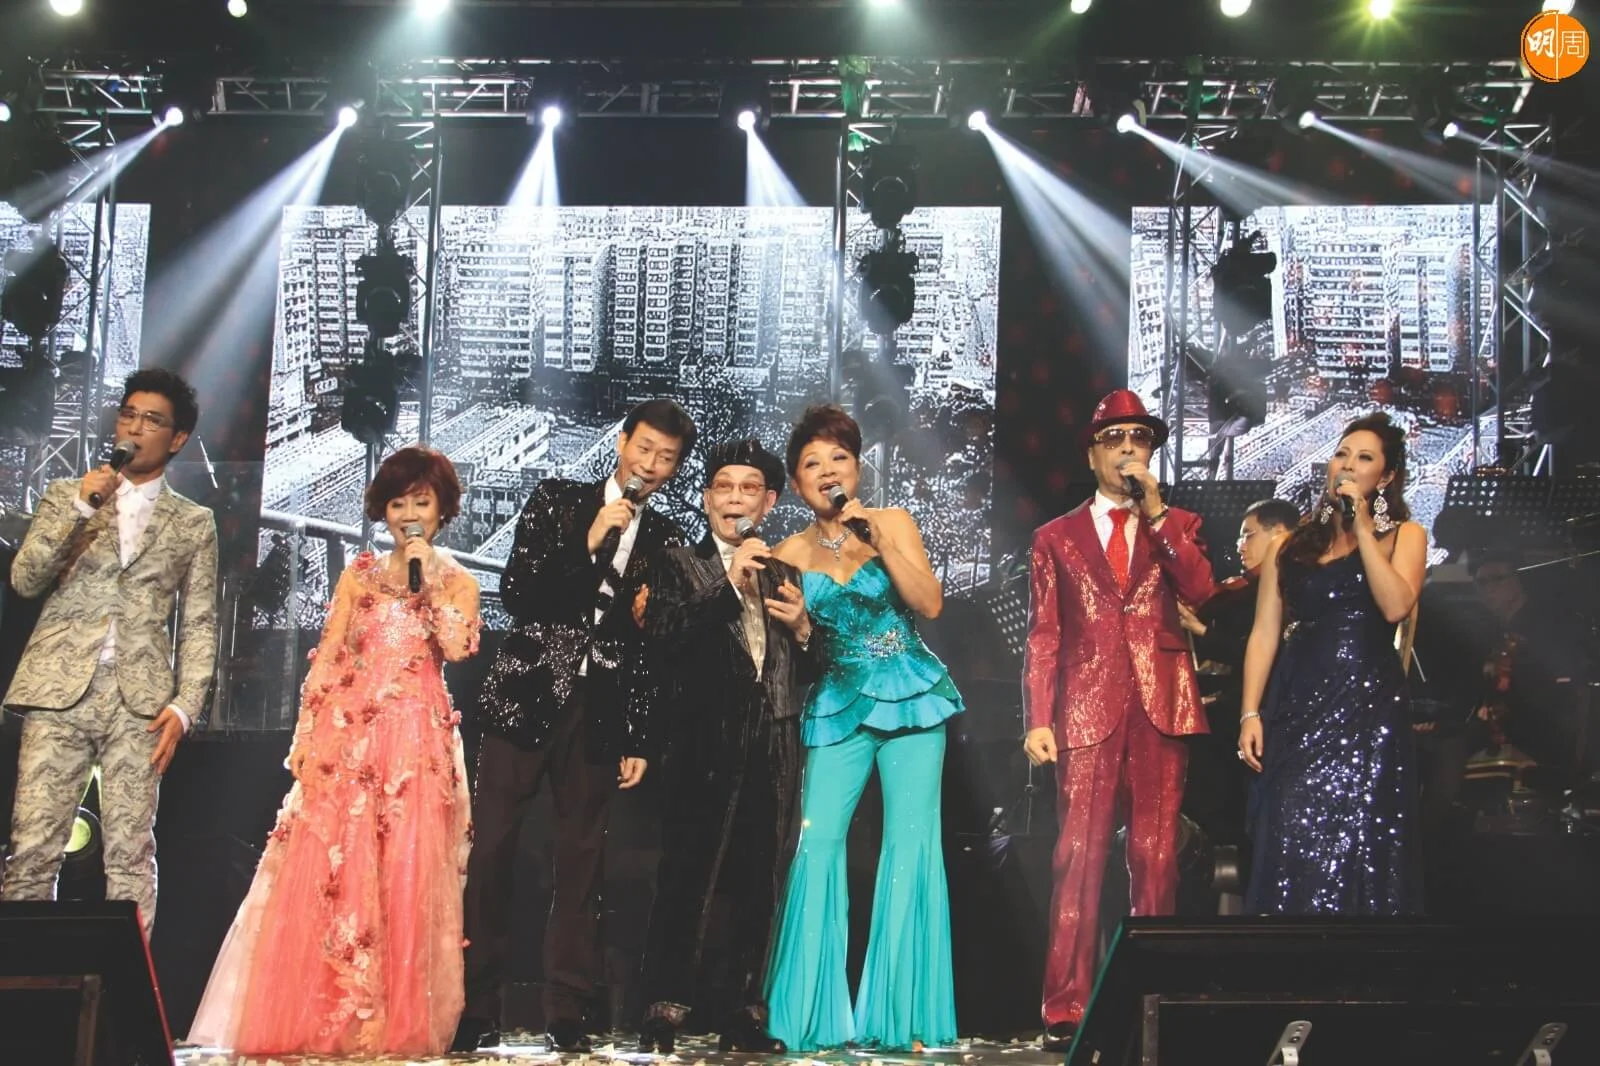 葉振棠指當年煇哥寫了很多靚作品給他們一班歌手唱。